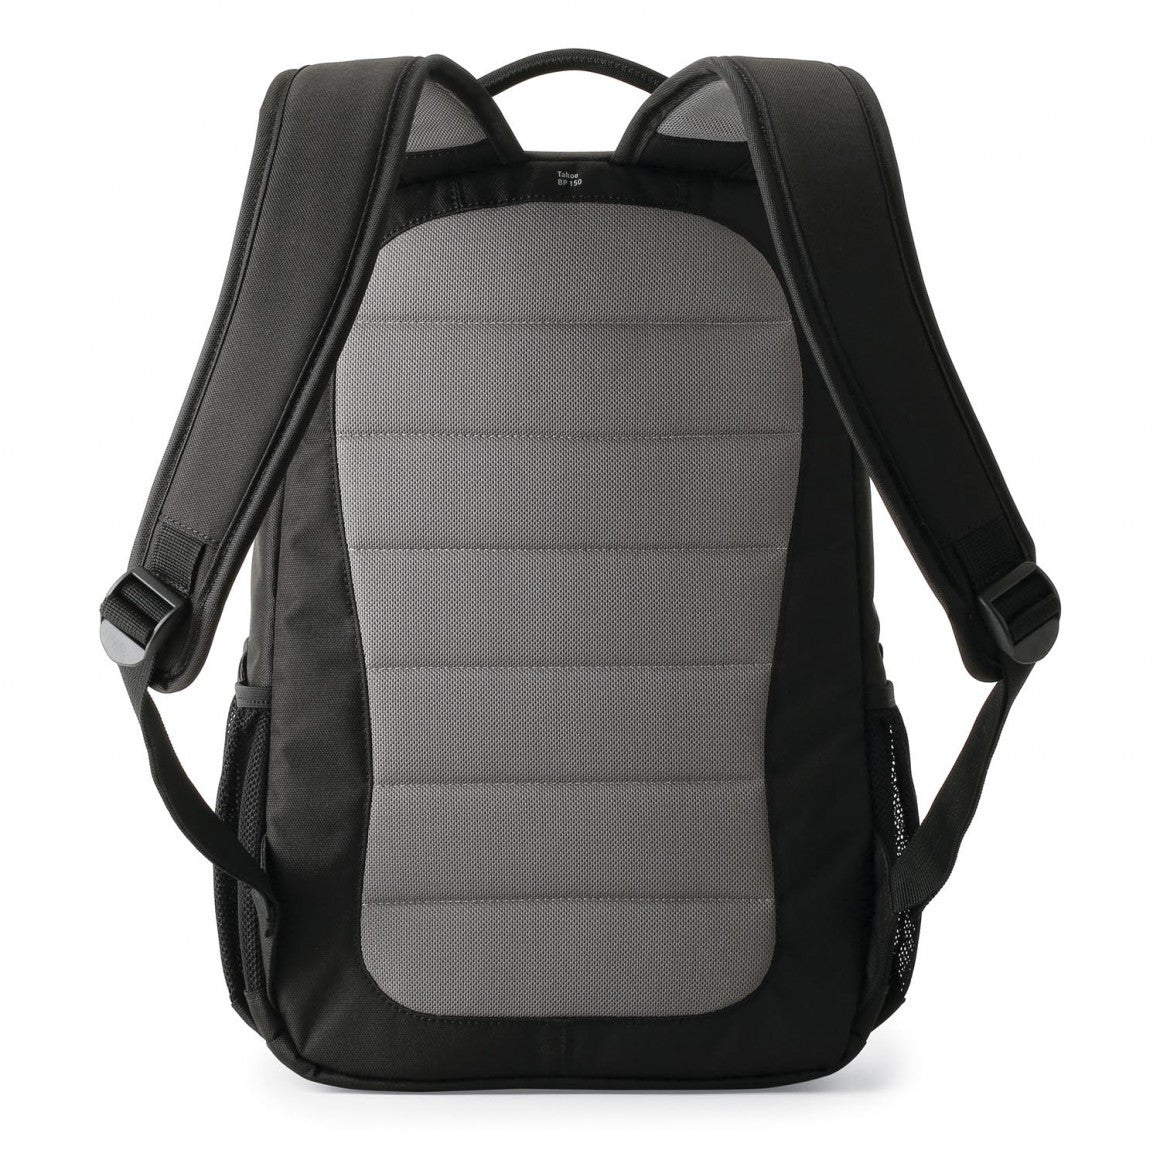 Lowepro Tahoe BP150 Backpack (Black), bags backpacks, Lowepro - Pictureline  - 5